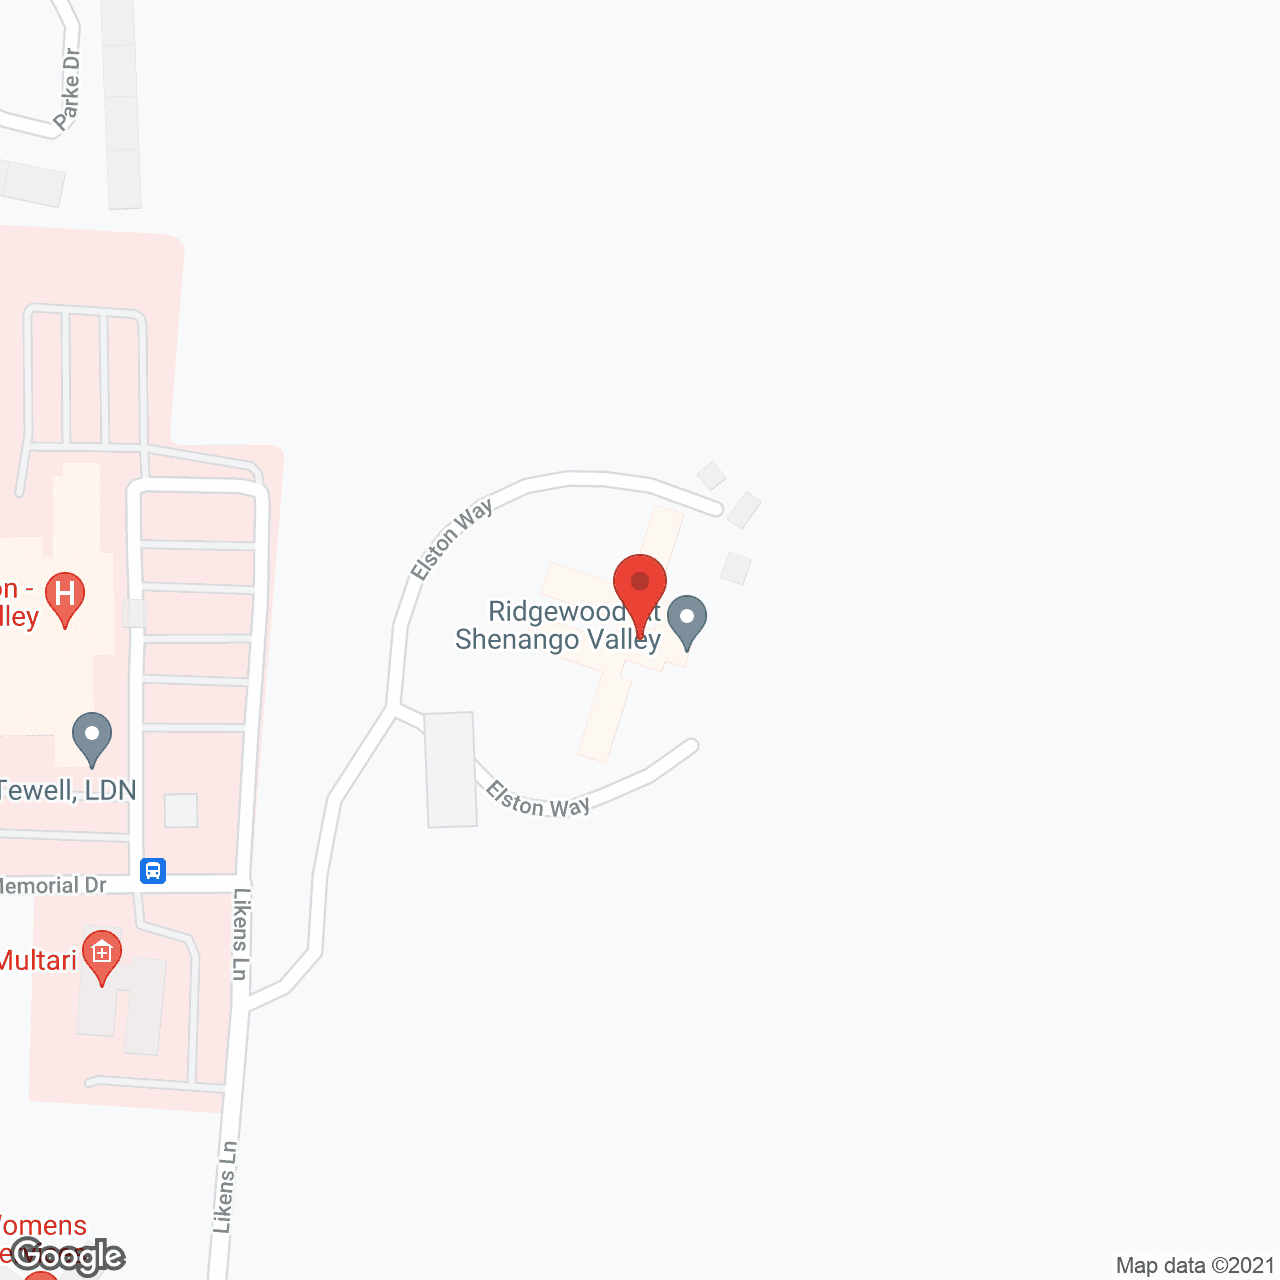 Ridgewood at Shenango Valley in google map